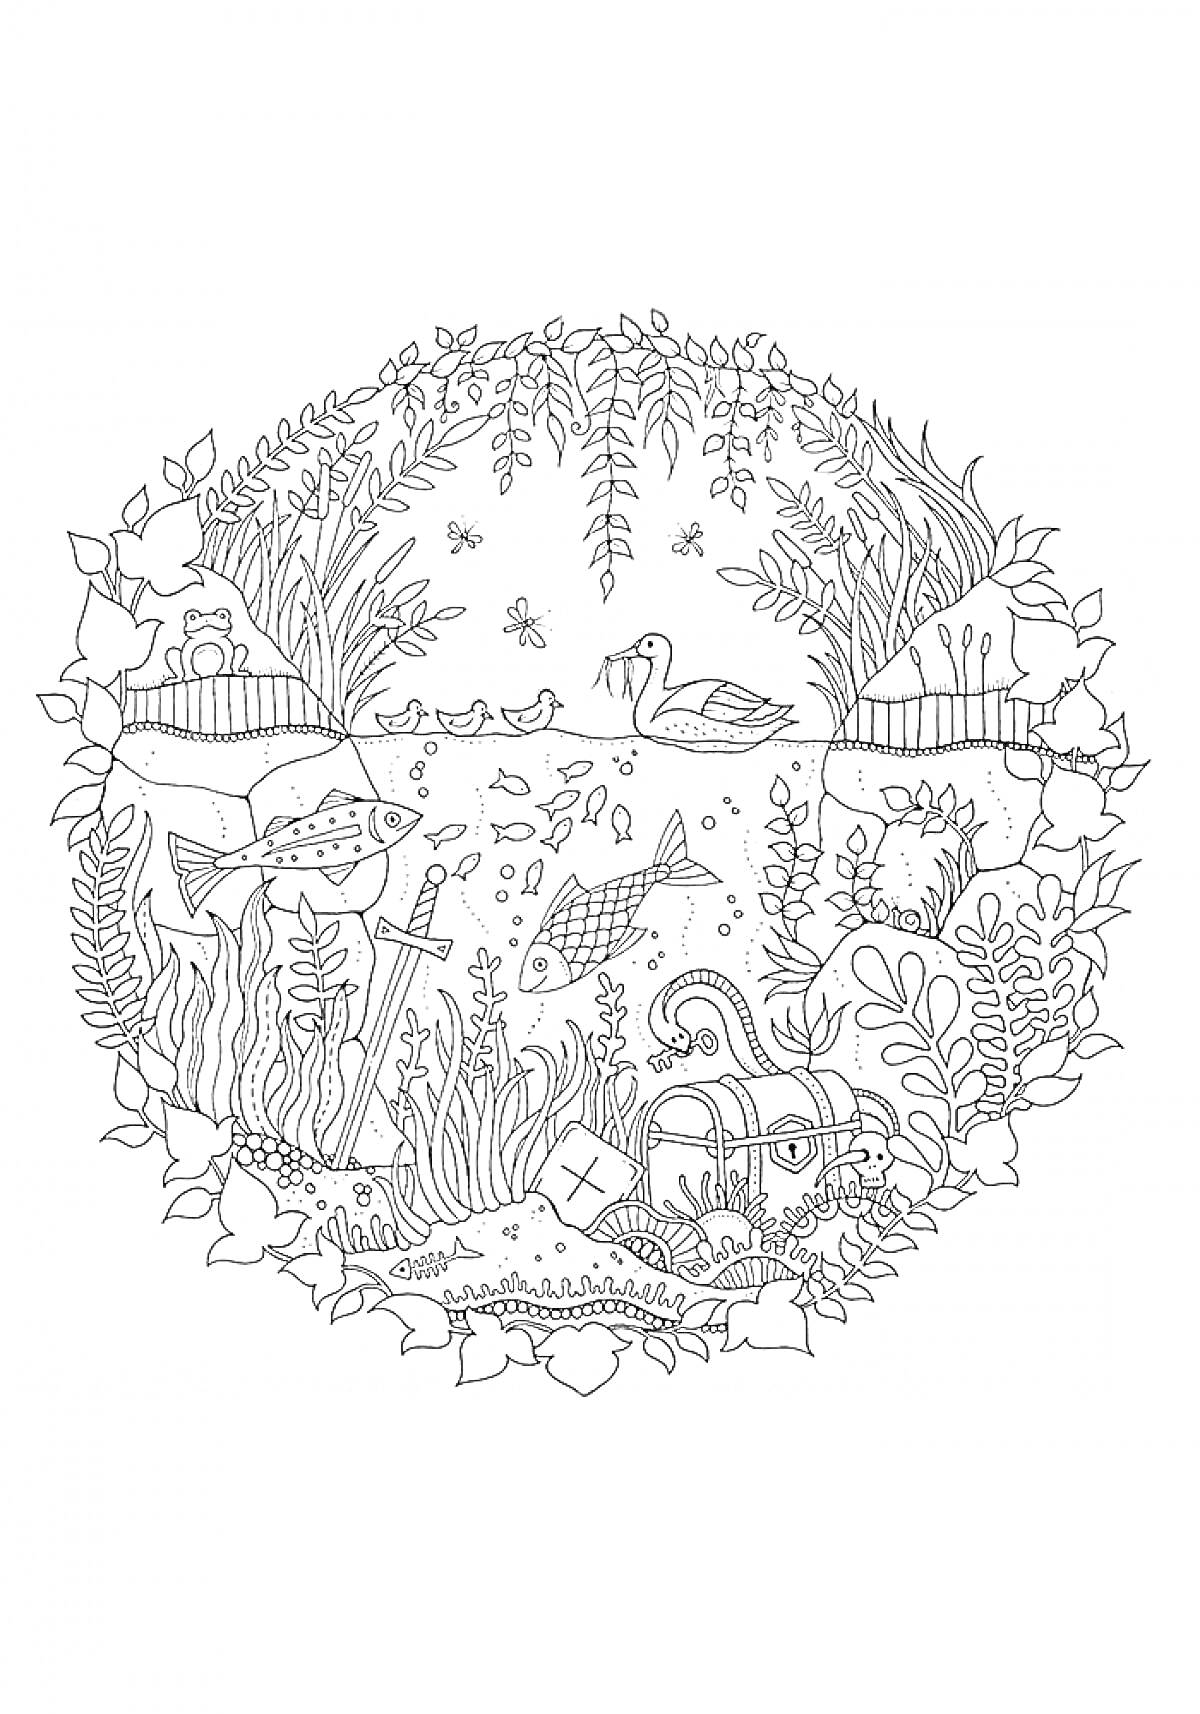 Раскраска Подводный мир с рыбами, мечом и сундуком, утка на поверхности, водоросли и подводная флора, деревья над водой